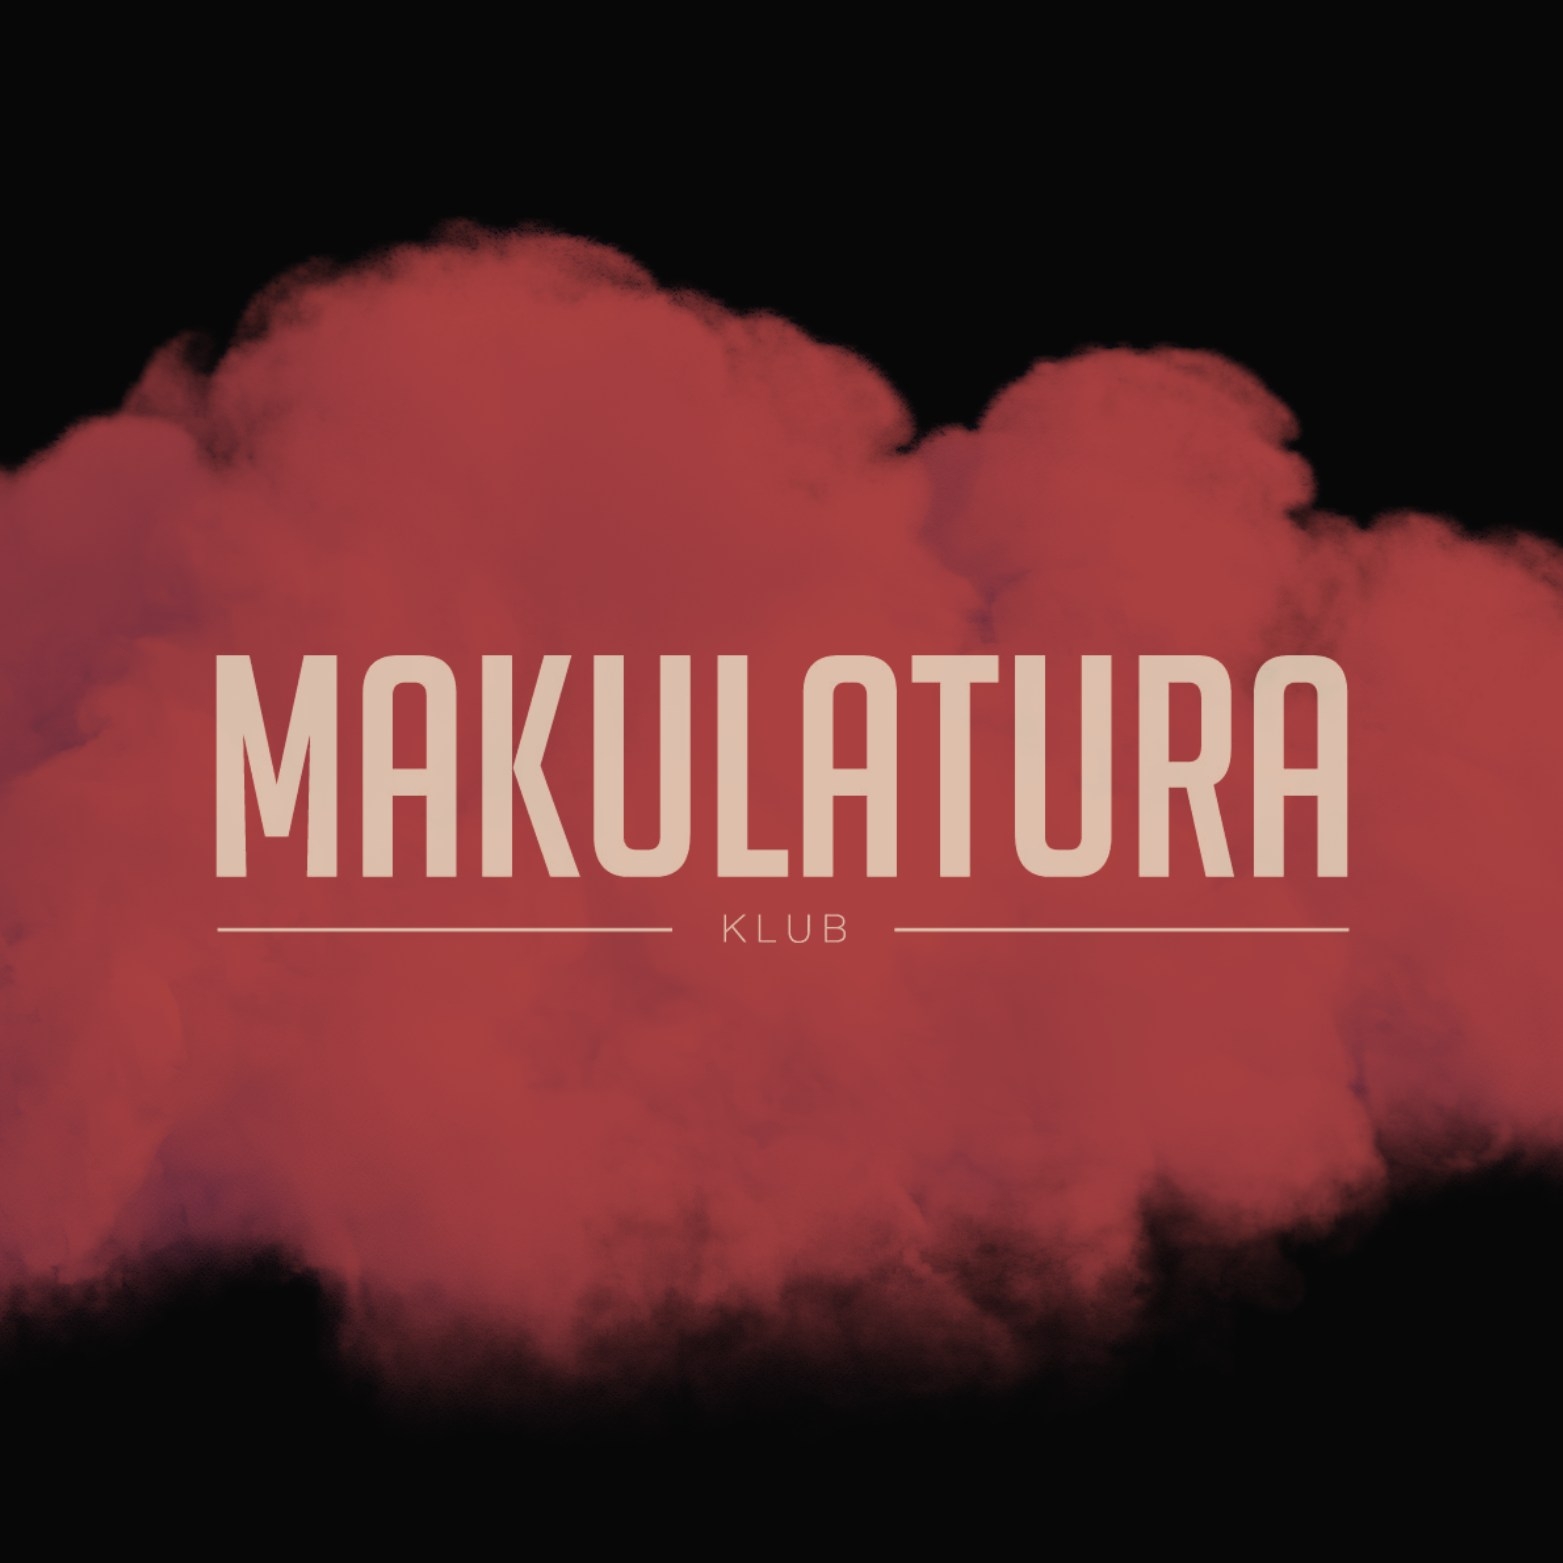 Club Makulatura